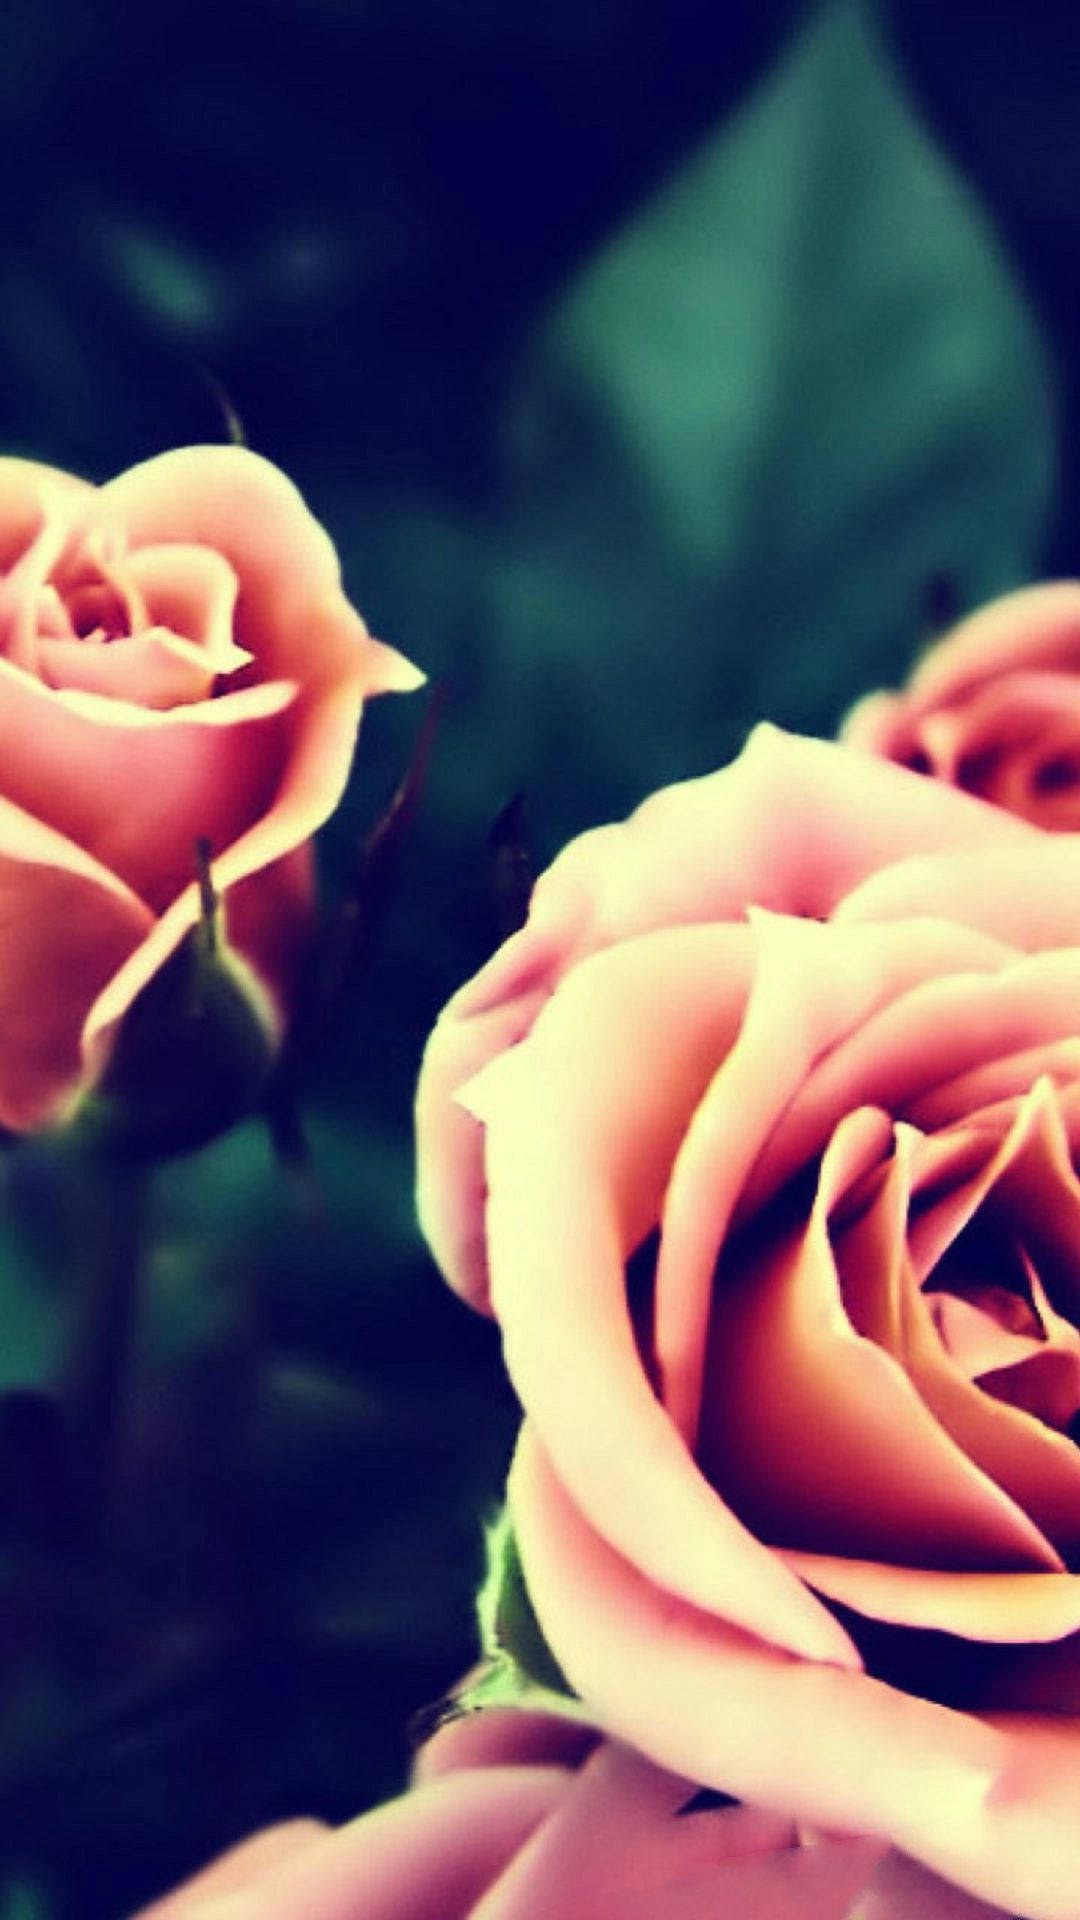 Fondosde Pantalla En Hd De Rosas Rosadas. Fondo de pantalla